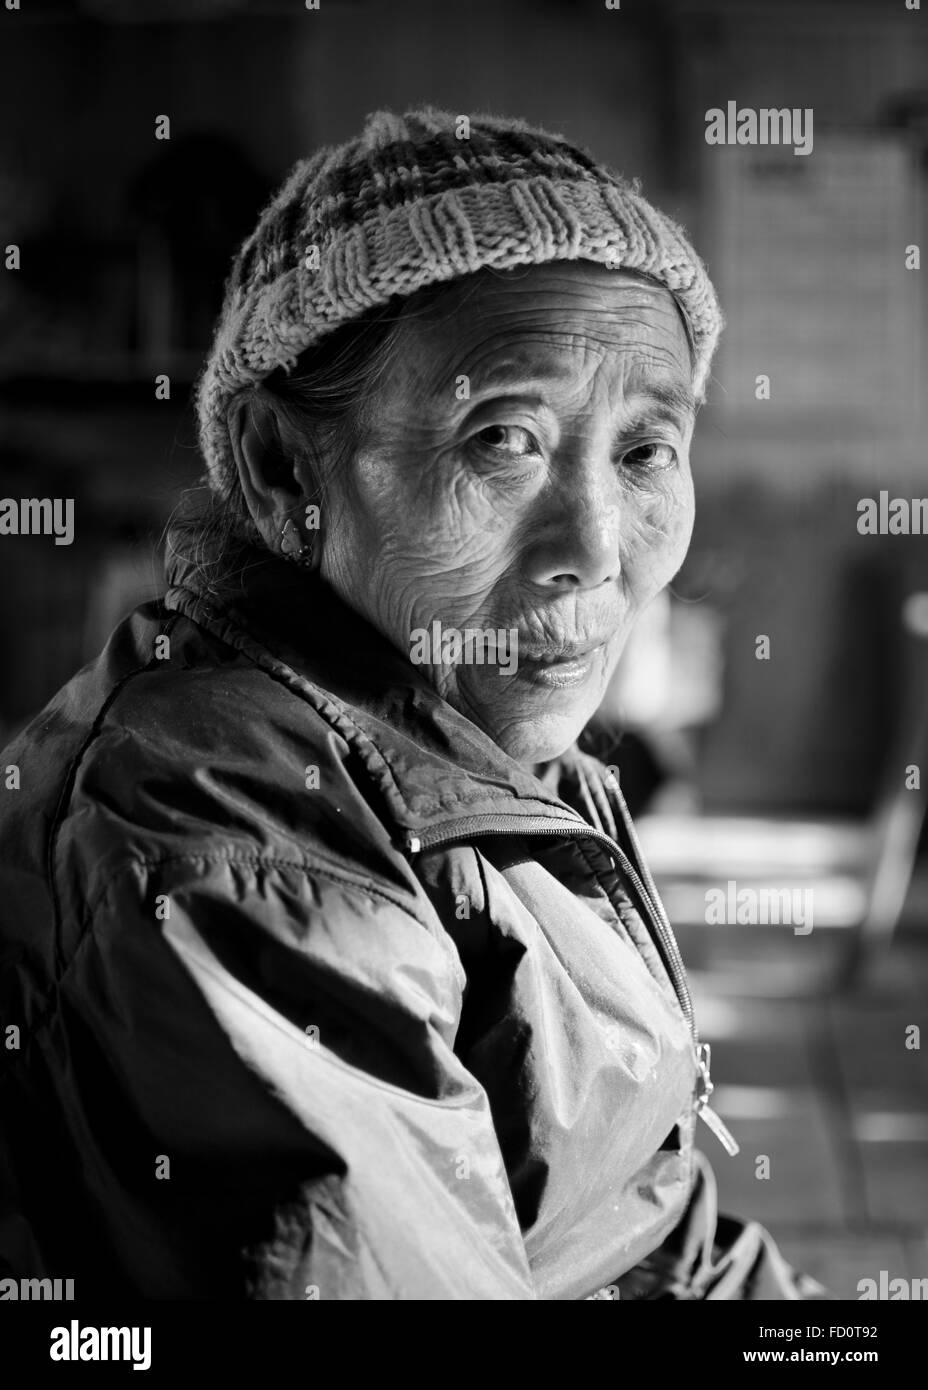 Tibetan Woman in Tibetan Refugee Self Help Centre, Darjeeling, India Stock Photo